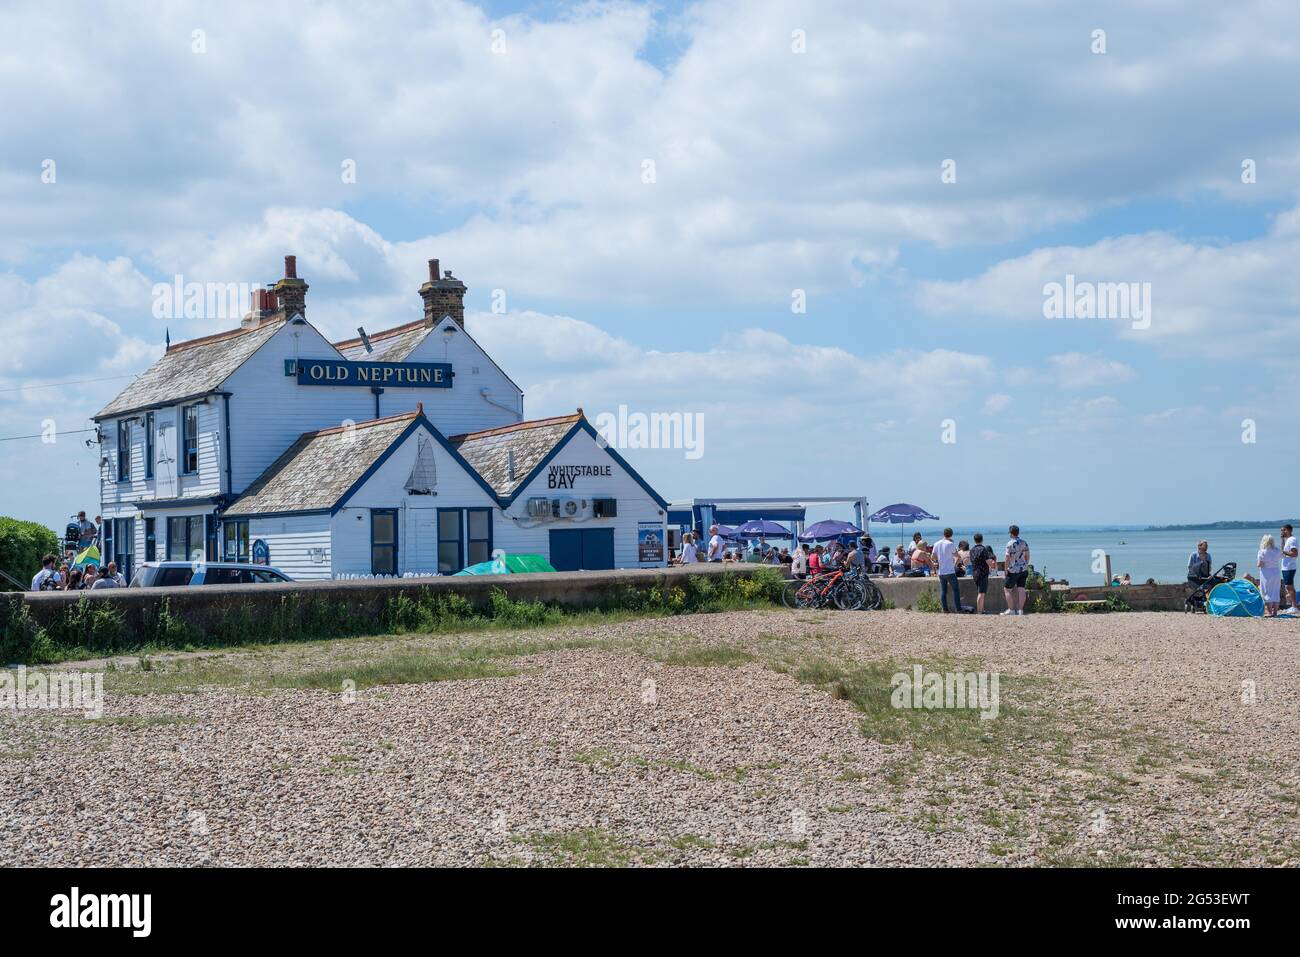 Le Vieux Neptune, un pub et restaurant en bord de mer dans la ville balnéaire de Whitstable. Les gens à l'extérieur apprécient la nourriture et les boissons. Kent, Angleterre, Royaume-Uni. Banque D'Images